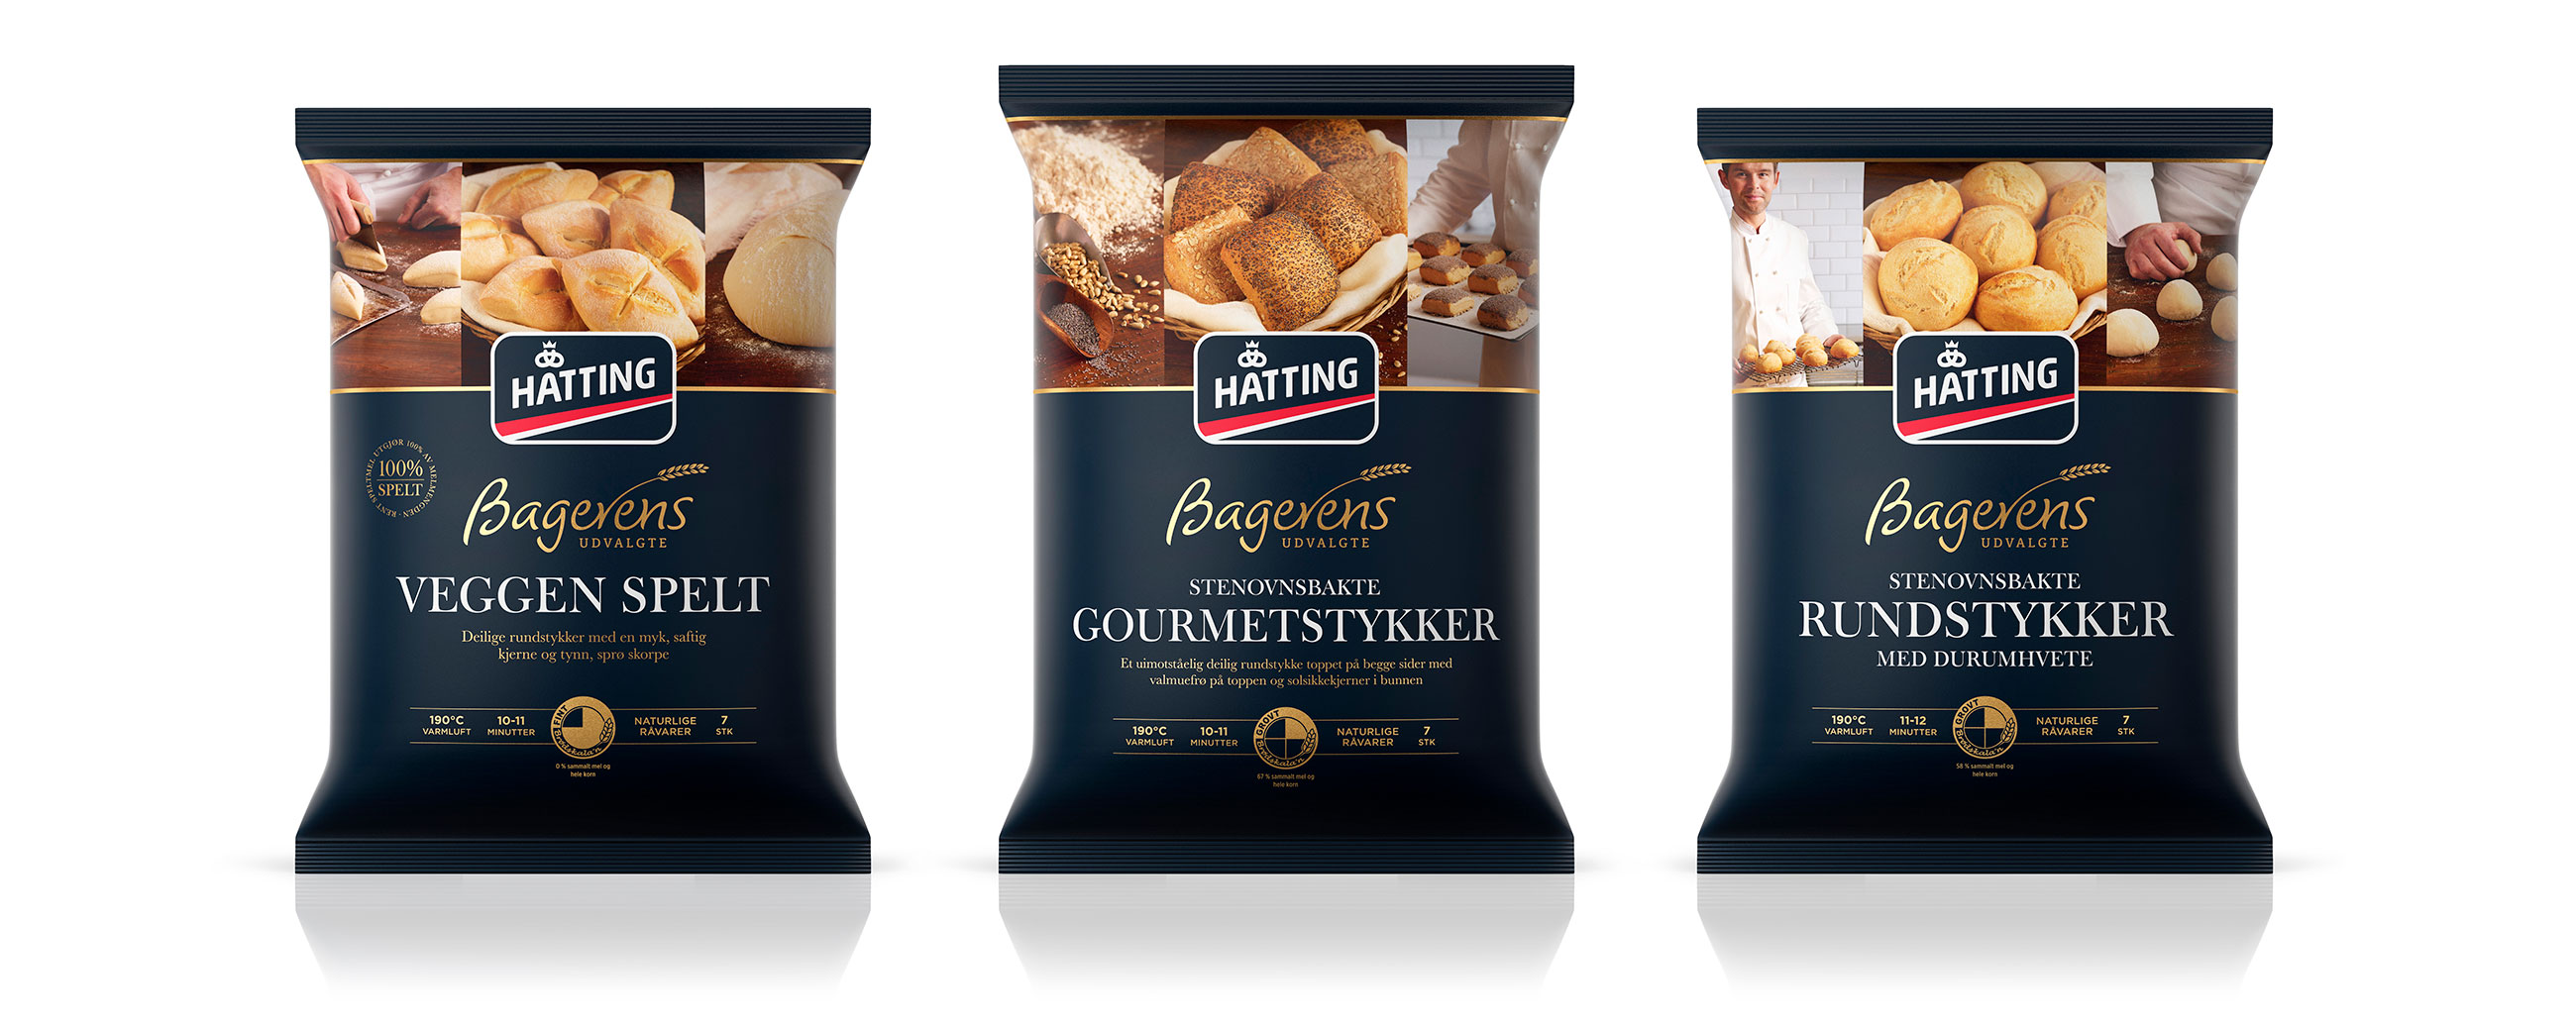 Hatting Bagerens udvalgte bakevarer baked goods. Emballasje packaging design.